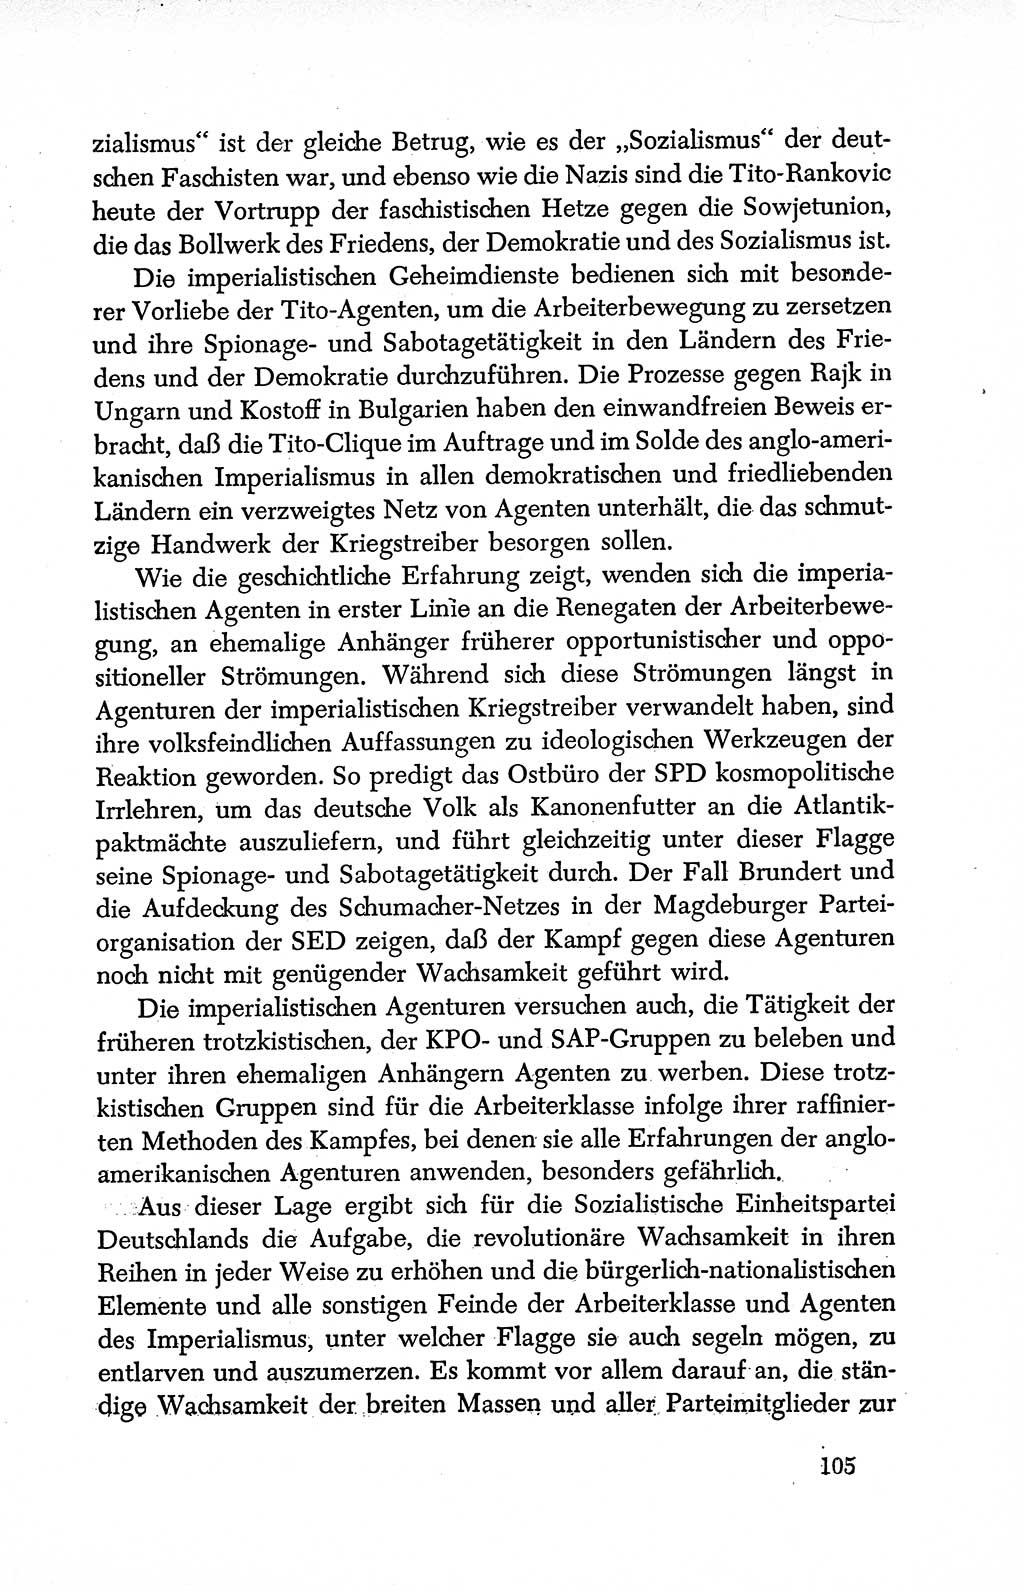 Dokumente der Sozialistischen Einheitspartei Deutschlands (SED) [Deutsche Demokratische Republik (DDR)] 1950-1952, Seite 105 (Dok. SED DDR 1950-1952, S. 105)